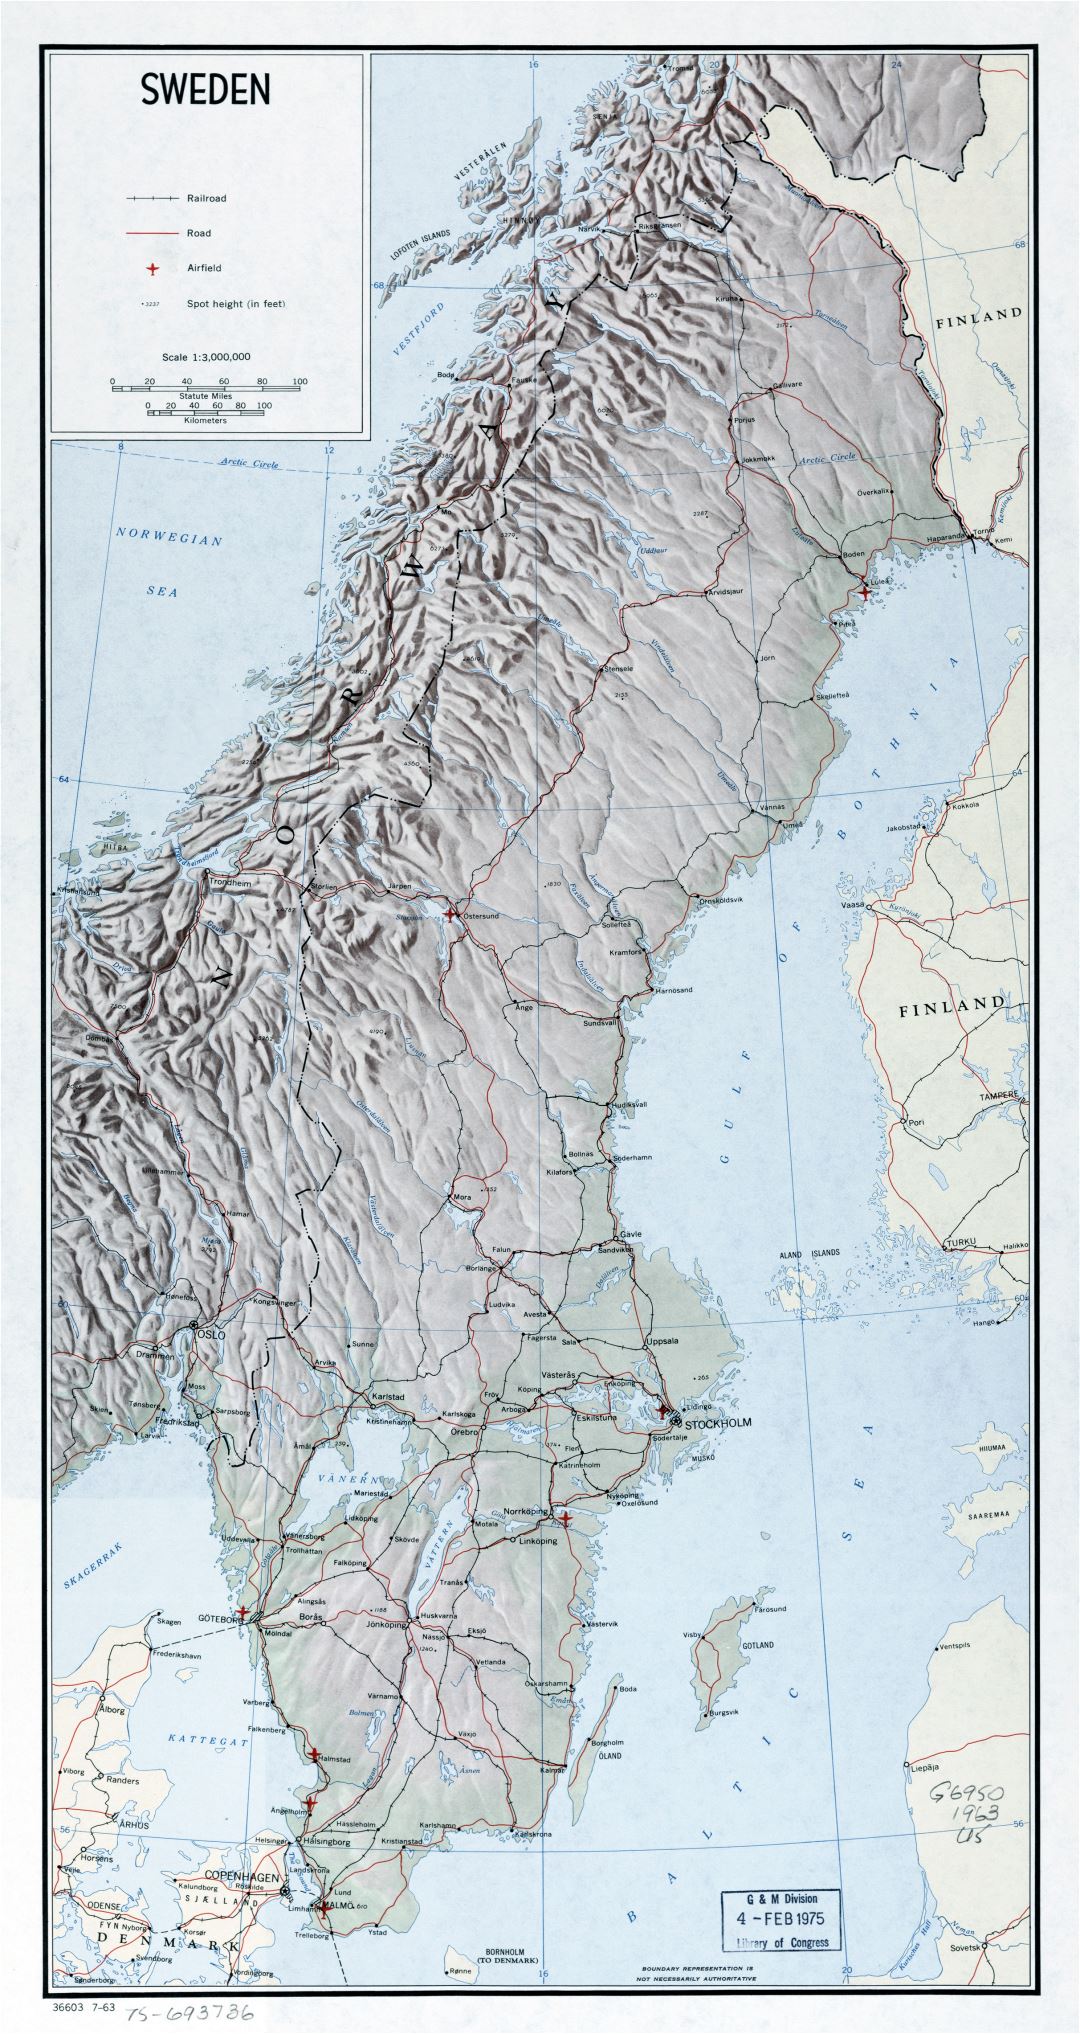 Grande detallado mapa político de Suecia con relieve, carreteras, vías férreas, ciudades principales y aeropuertos - 1963